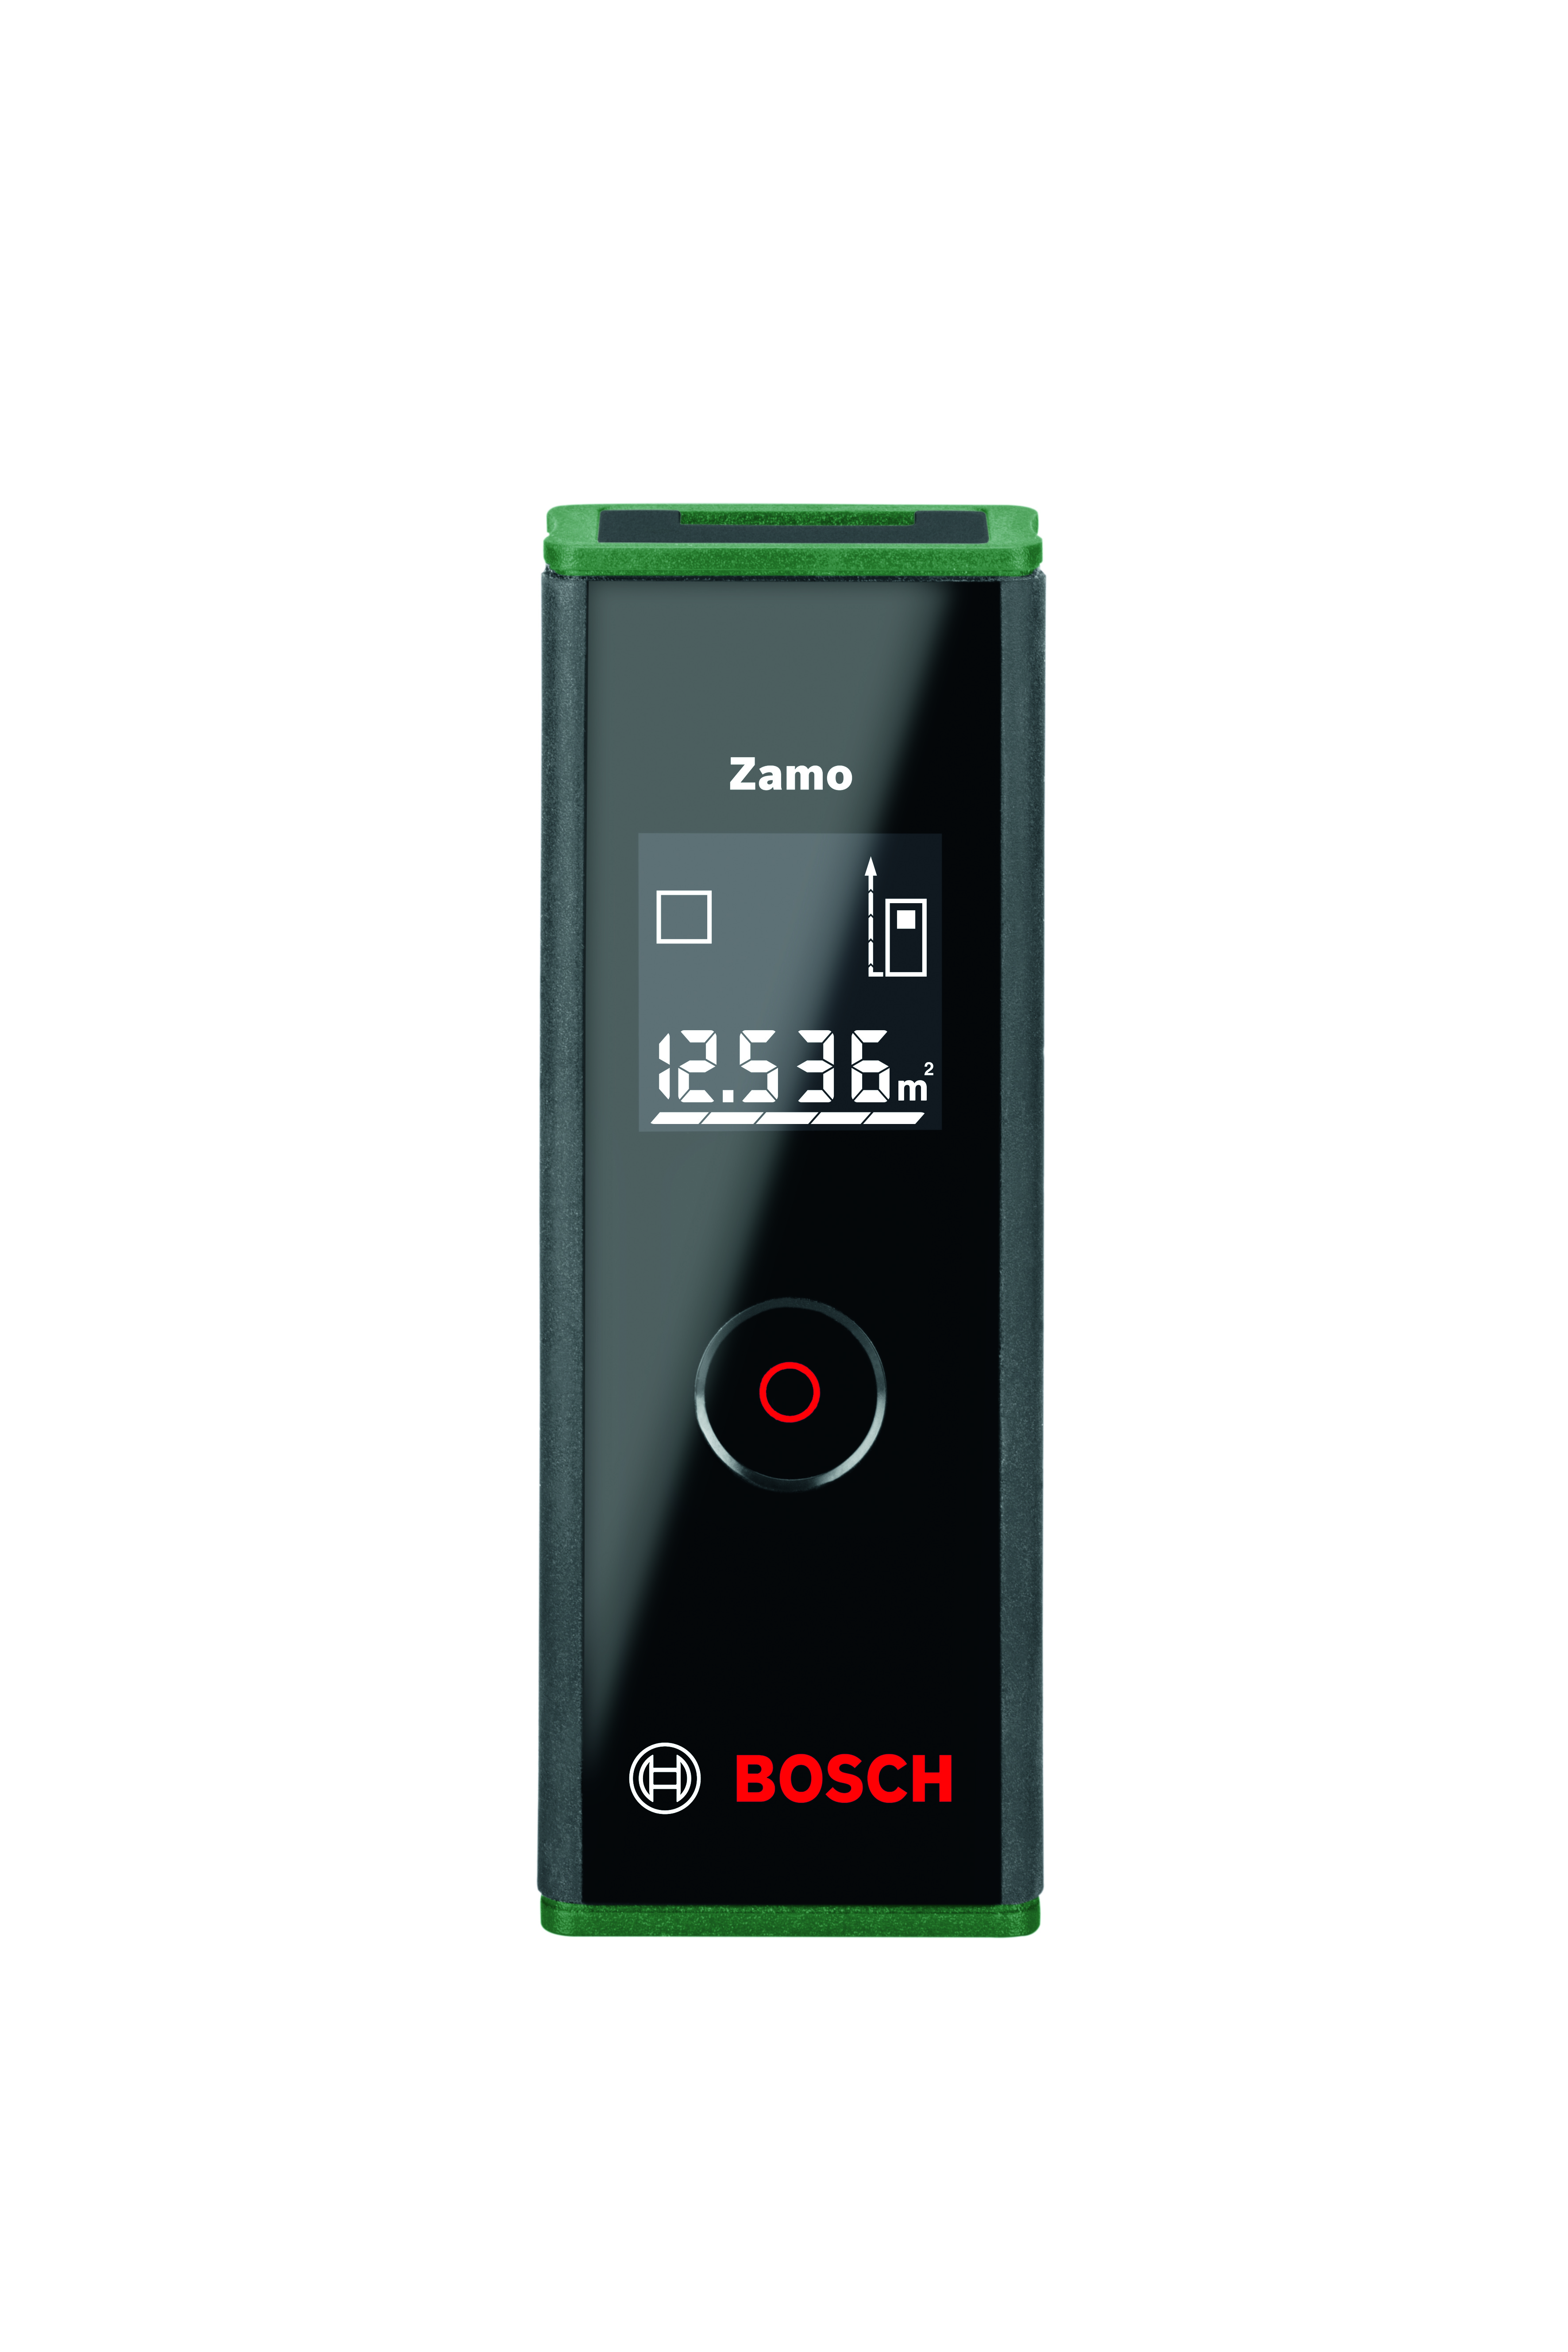 Gå vandreture Udstyre liv Grøn Bosch Laserafstandsmåler Zamo III Basic Standard -  Laserafstandsmåle... | Lemvigh-Müller